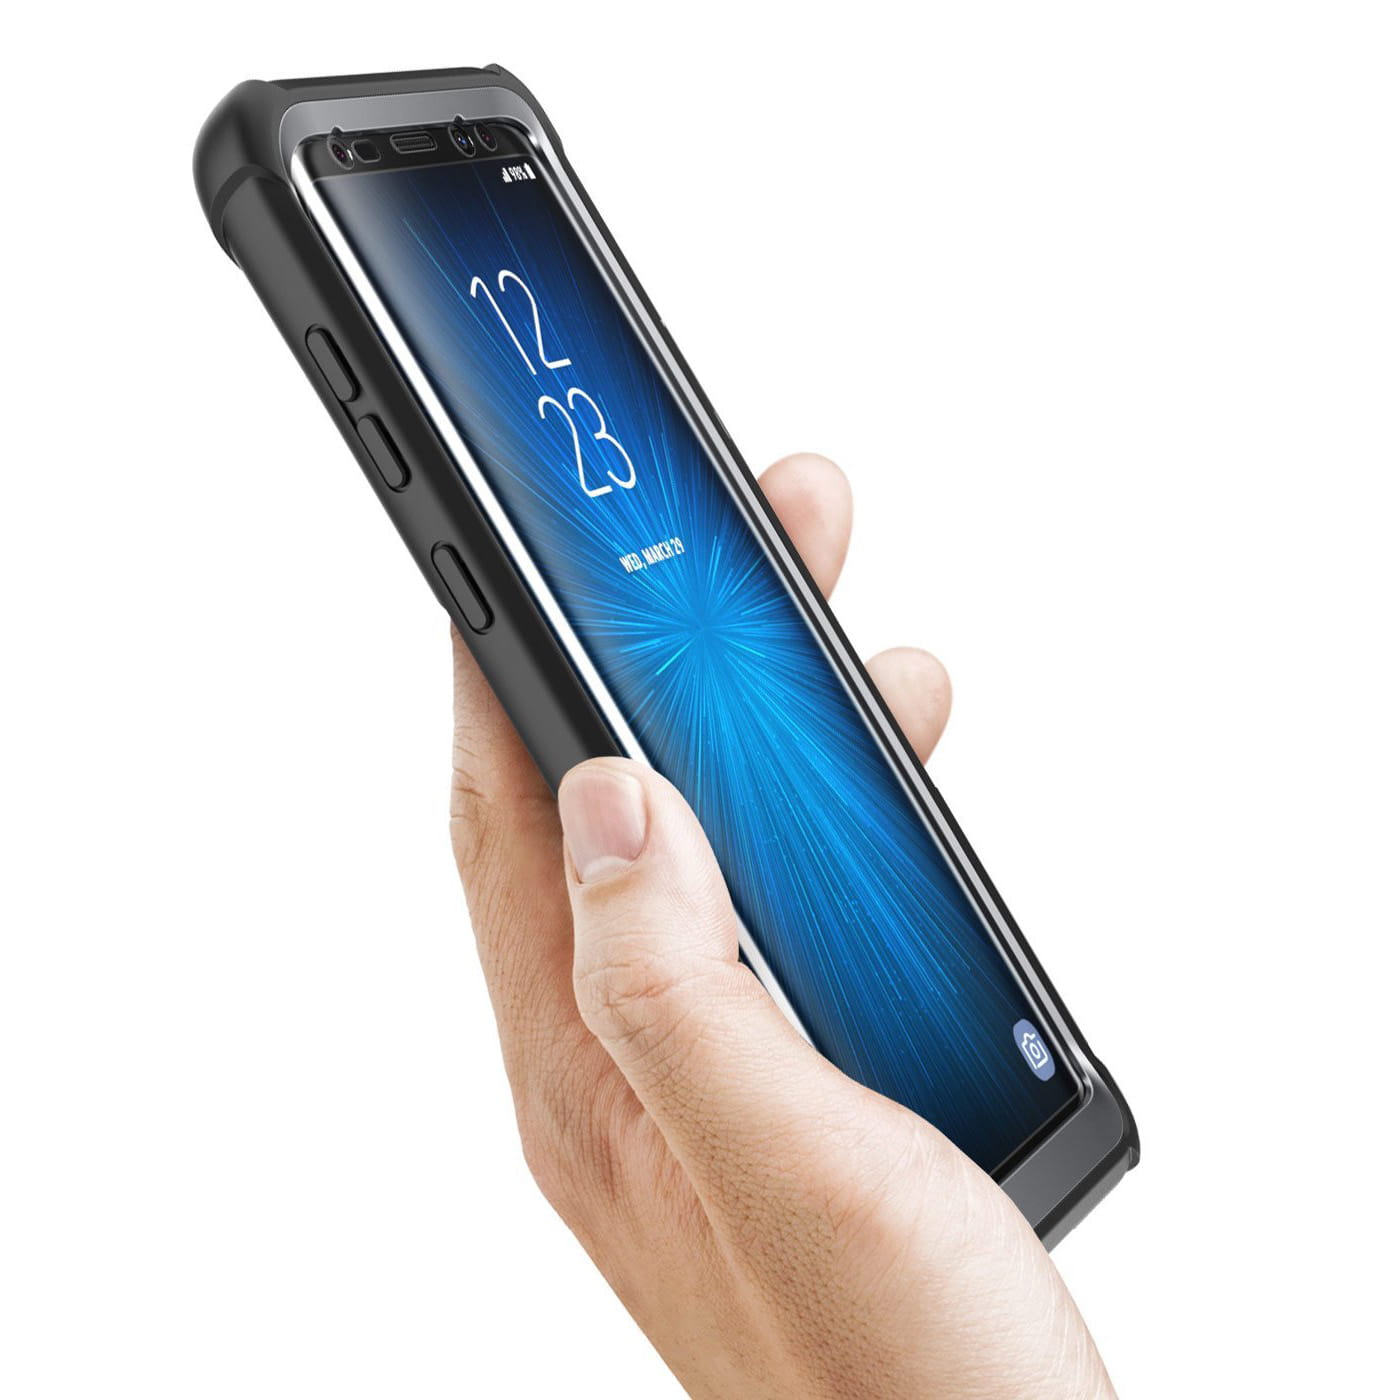 Gepanzerte Schutzhülle mit eingebautem Displayschutz Supcase i-Blason Ares für Galaxy S9, schwarz.